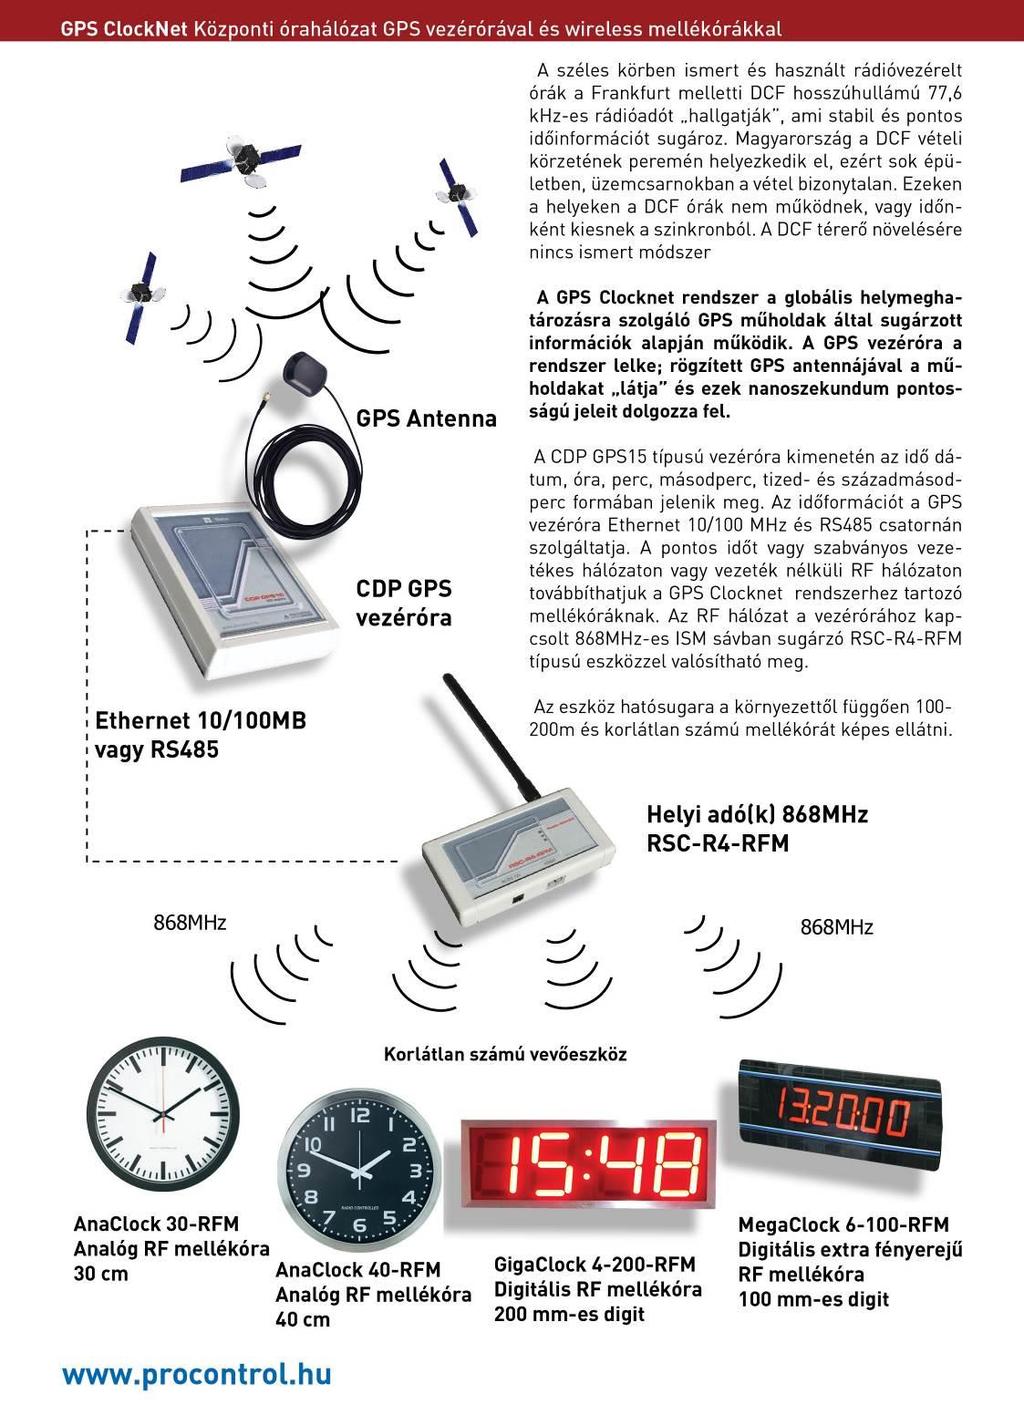 GPS Clocknet: Wireless, vezeték nélküli központosított órahálózat Leírás bővebben: